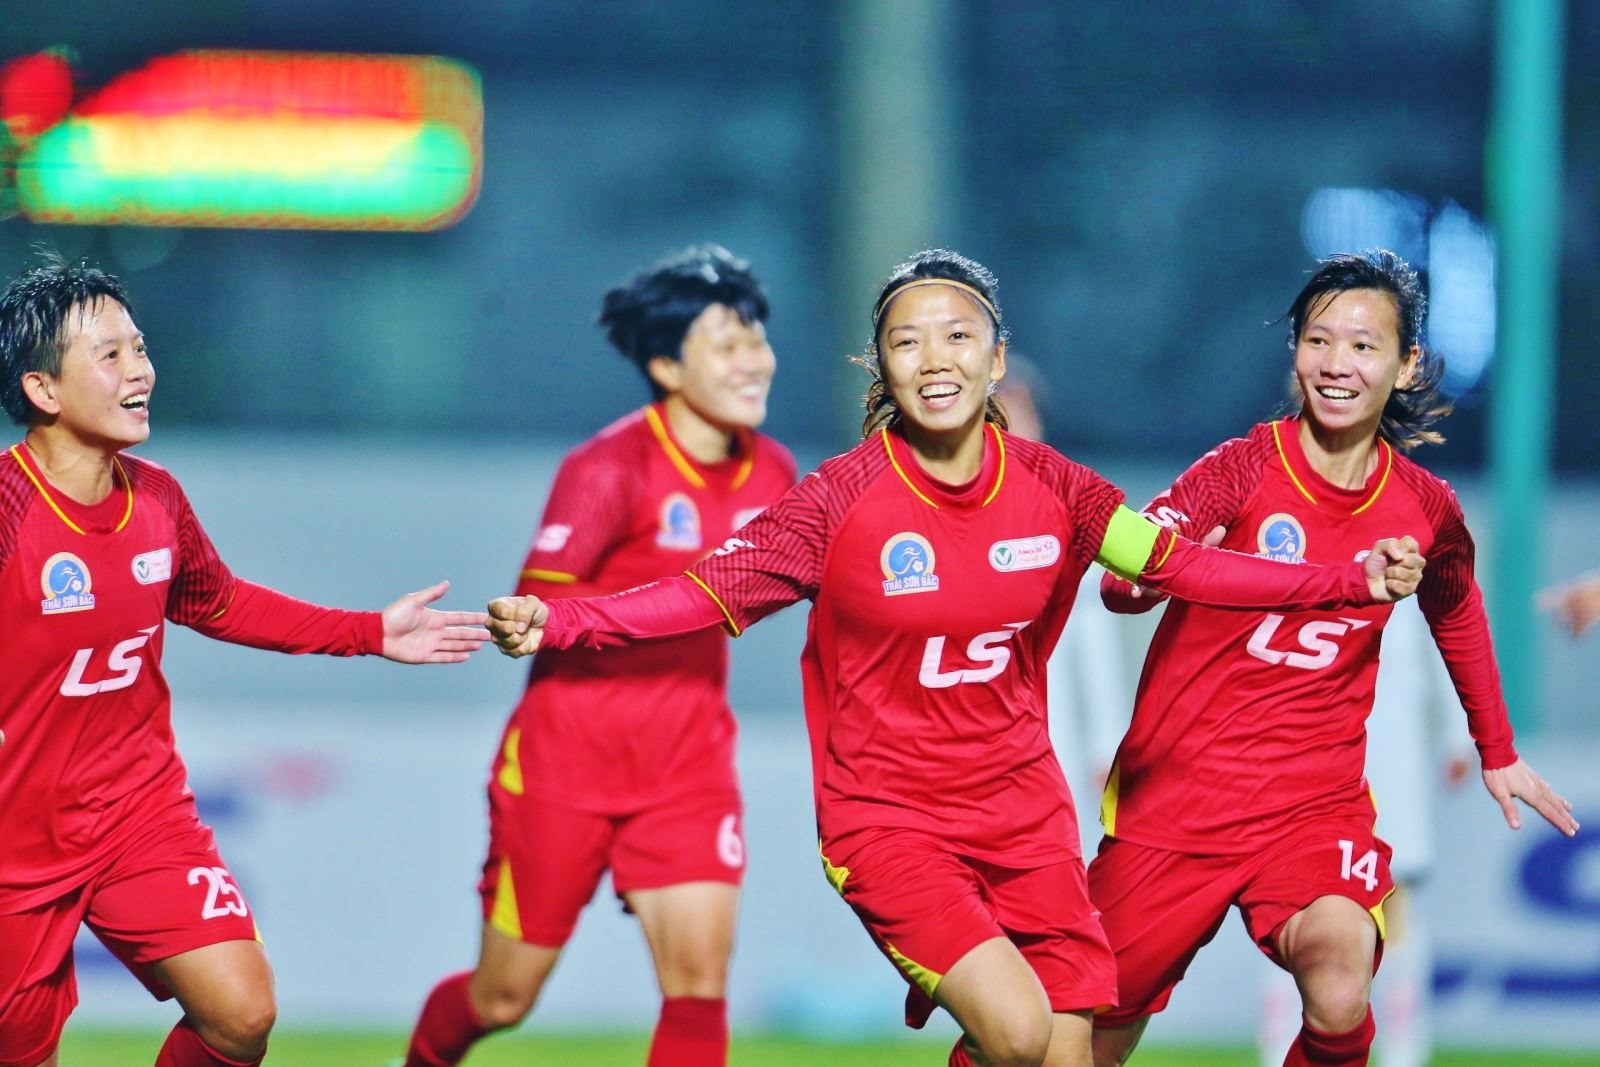 Liên đoàn Bóng đá châu Á vinh danh đội tuyển nữ Việt Nam